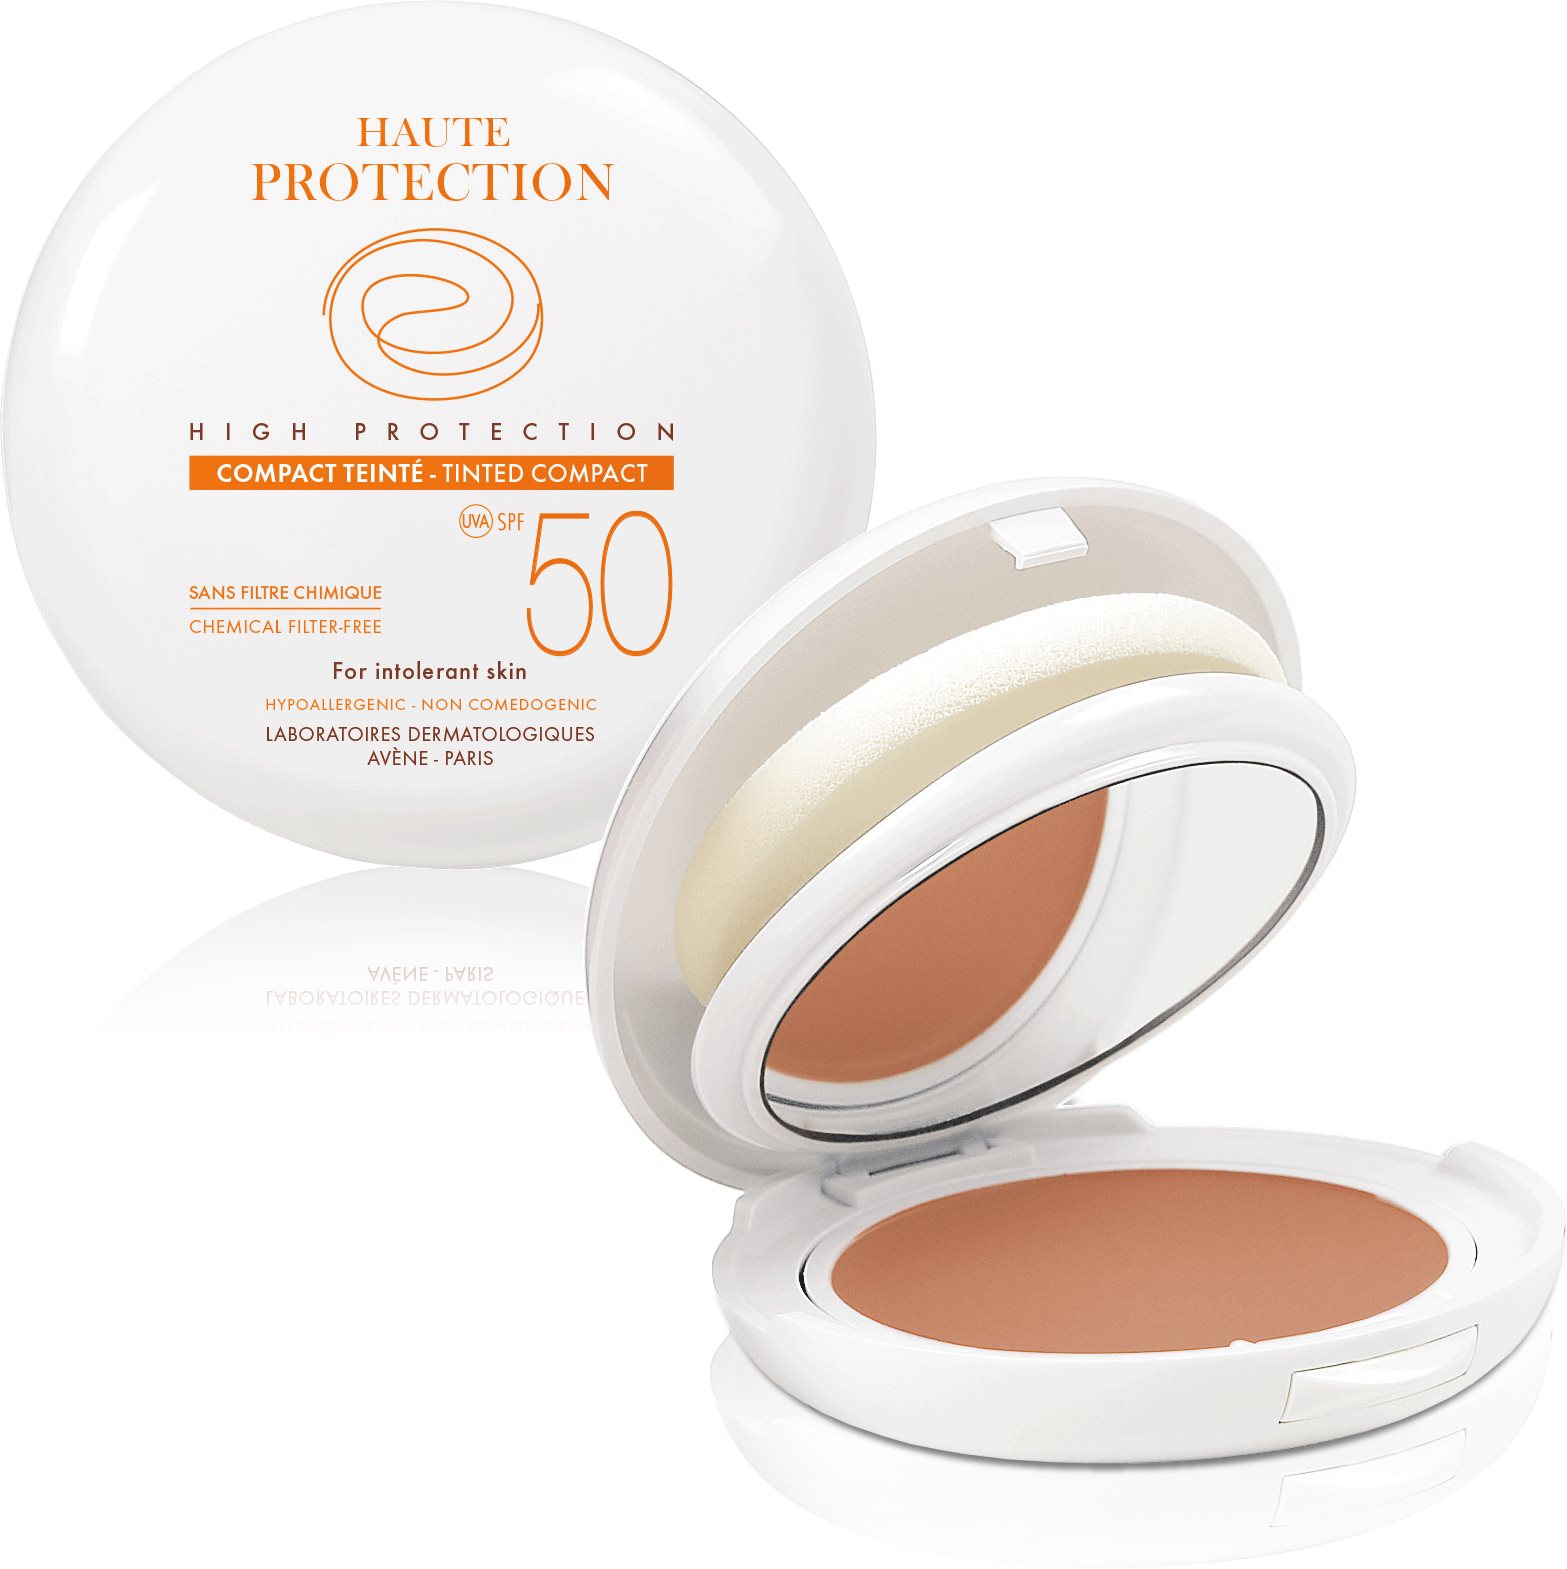 Alapozó AVENE kompakt make-up SPF 50 - világos árnyalat túlérzékeny, intoleráns vagy allergiás bőrre